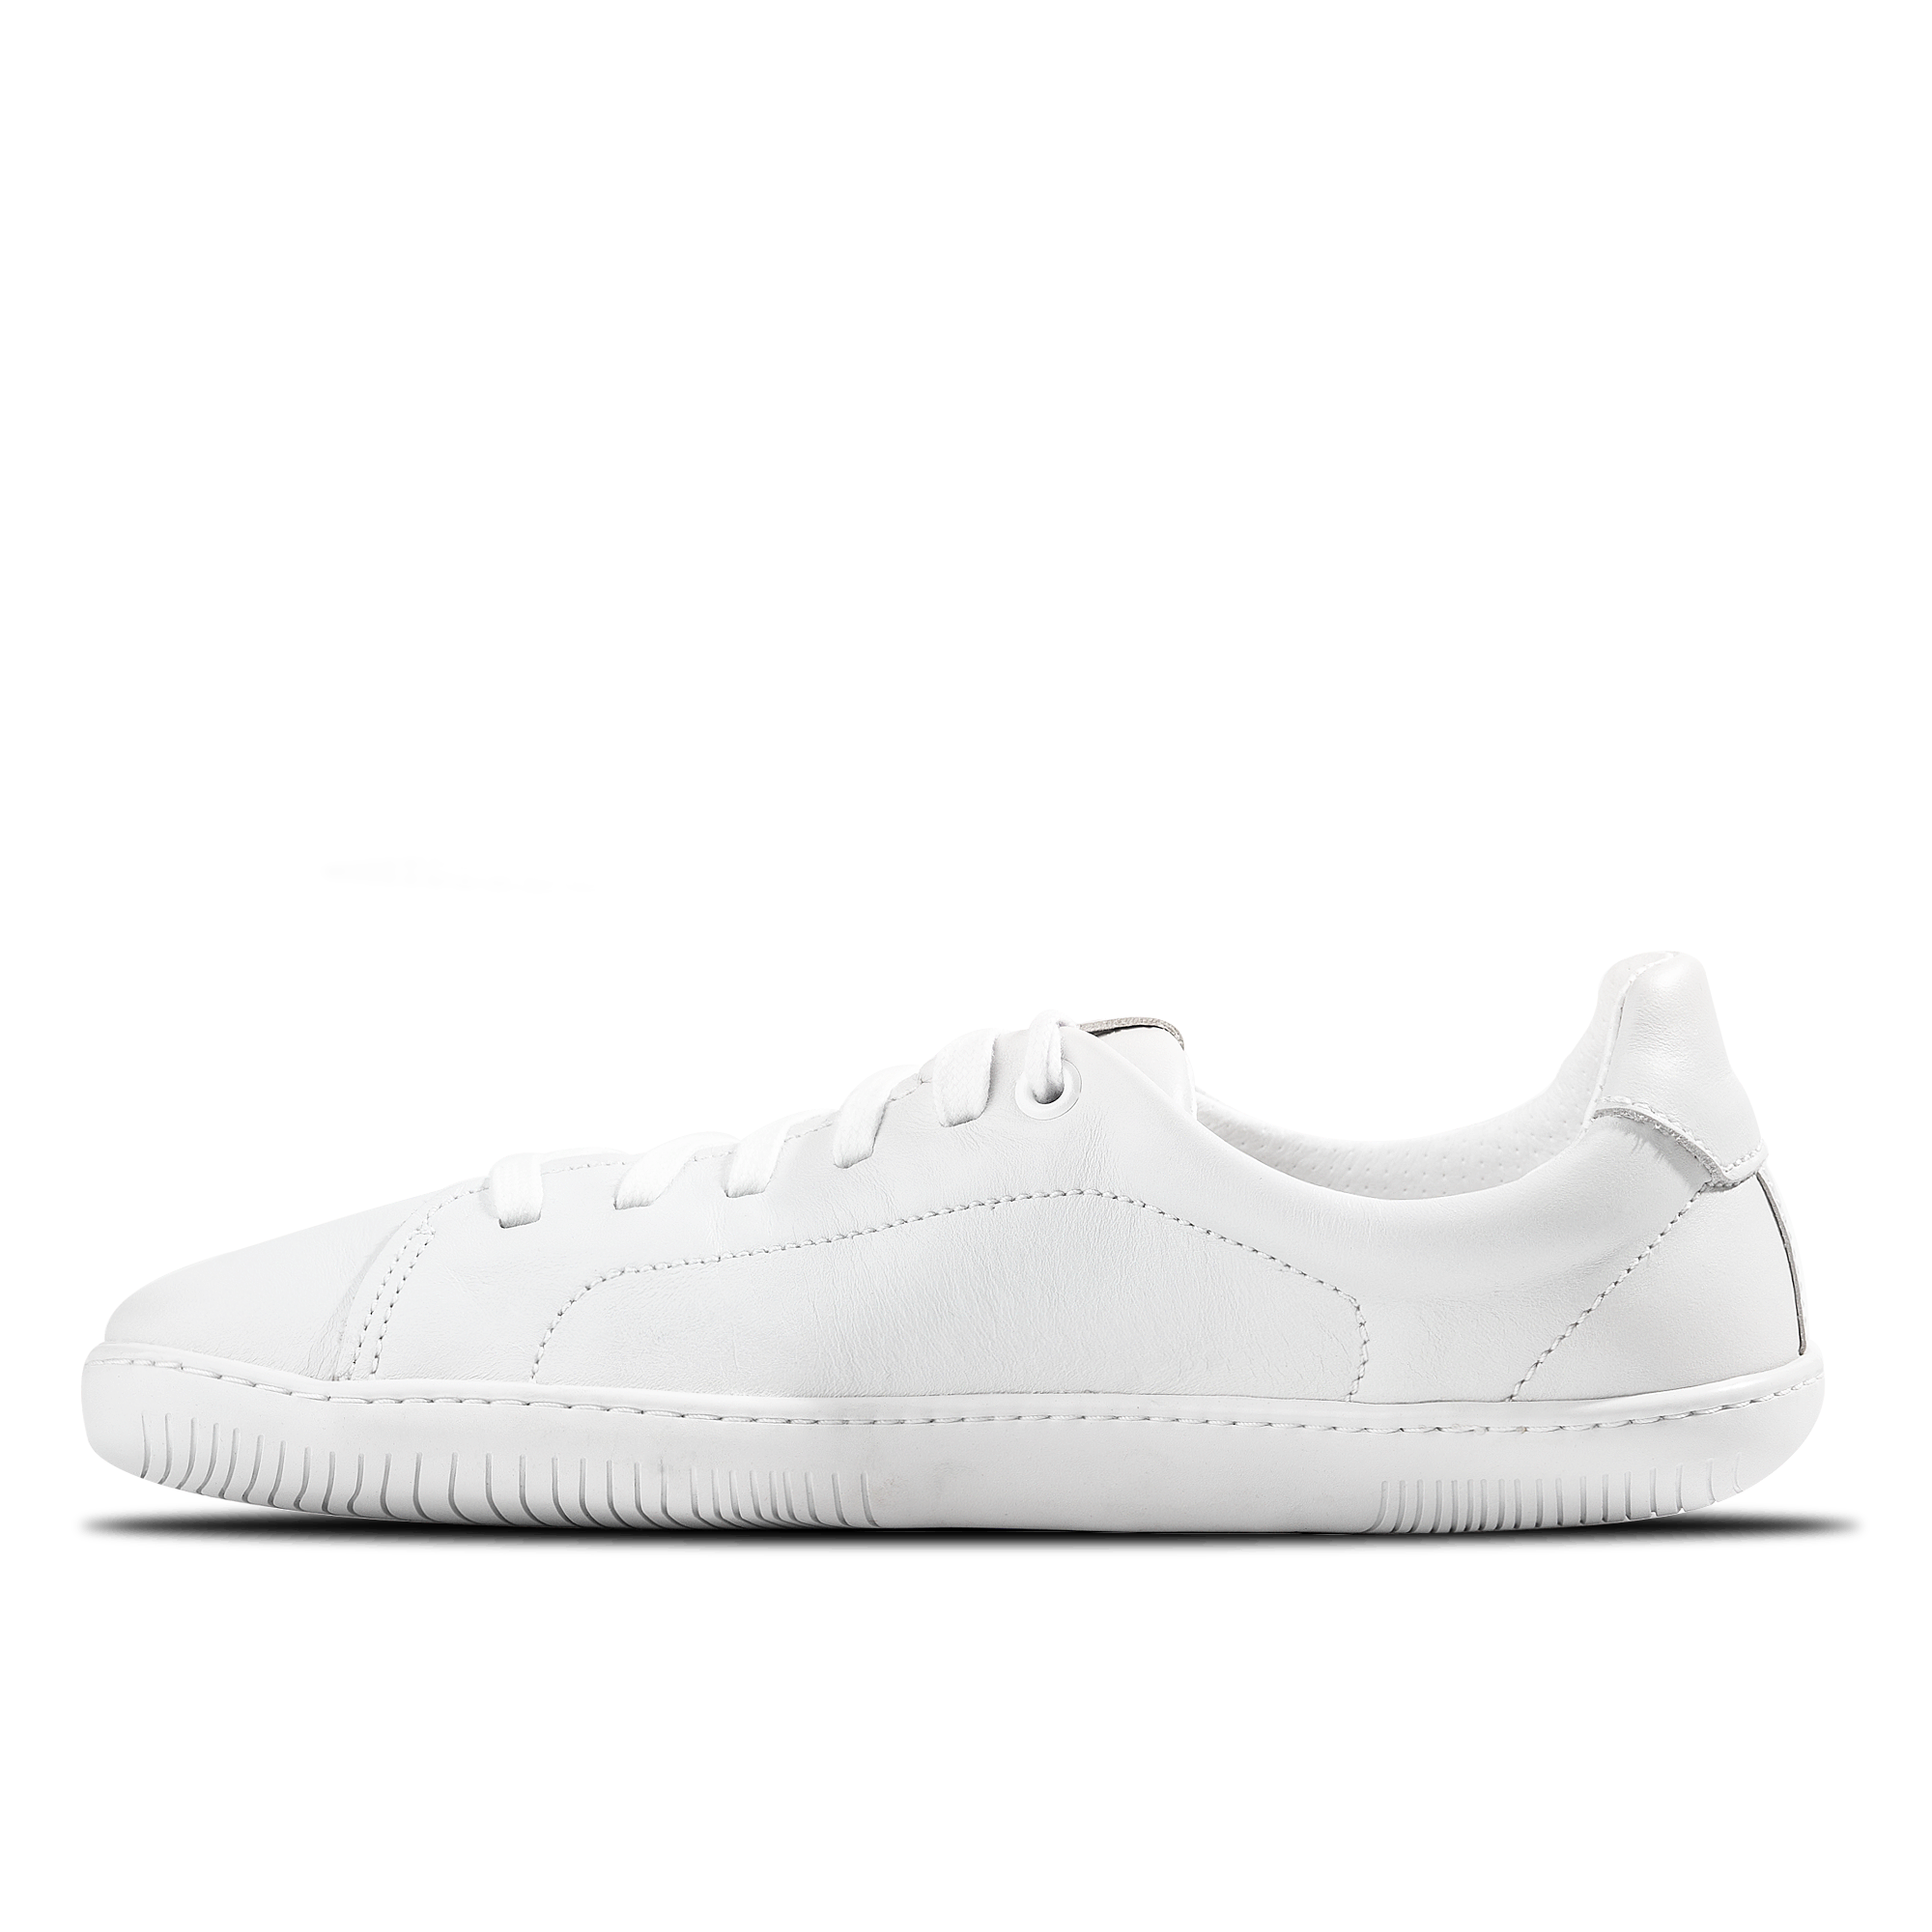 Aylla Keck Womens barfods sneakers i læder til kvinder i farven white / white, inderside